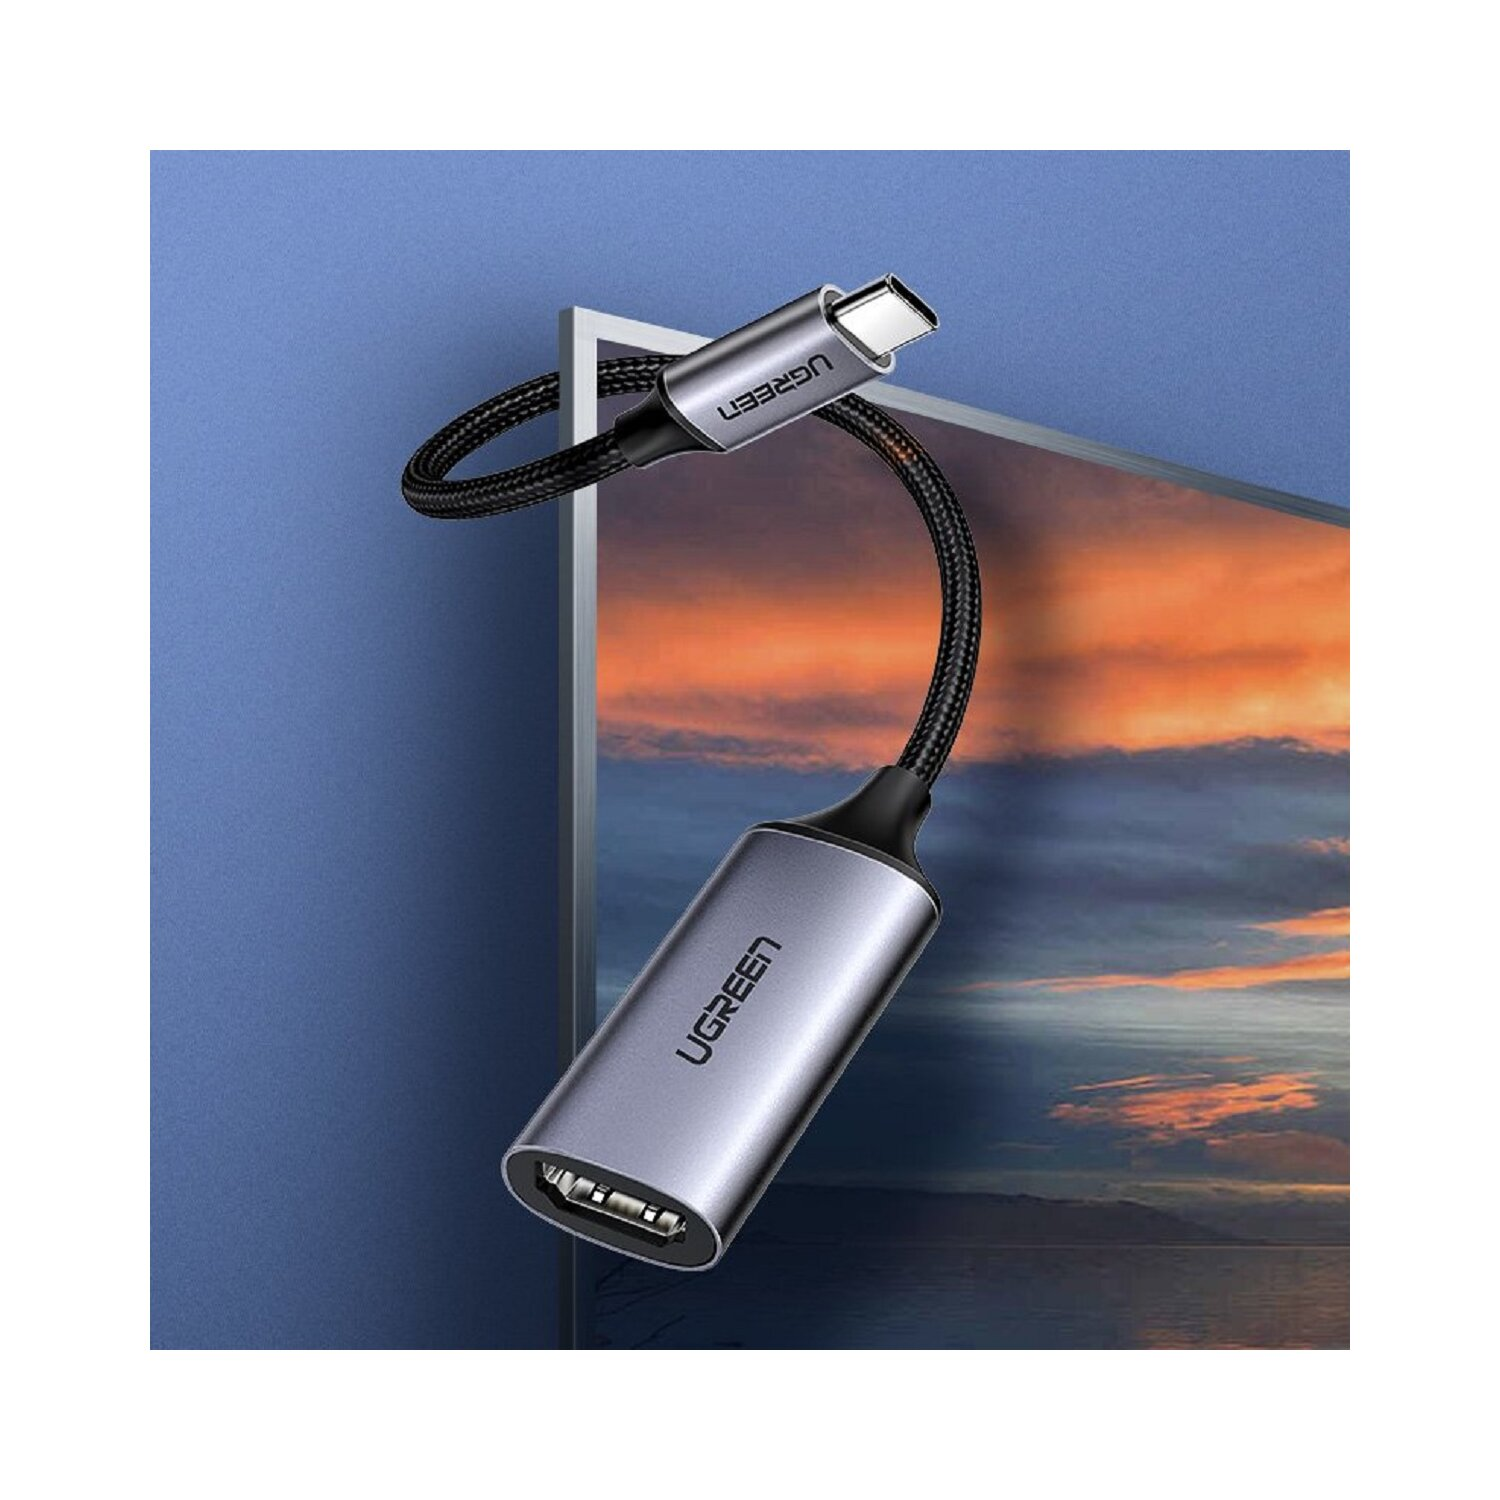 UGREEN Typ USB HDMI C auf Adapter, HDMI Grau 2.0